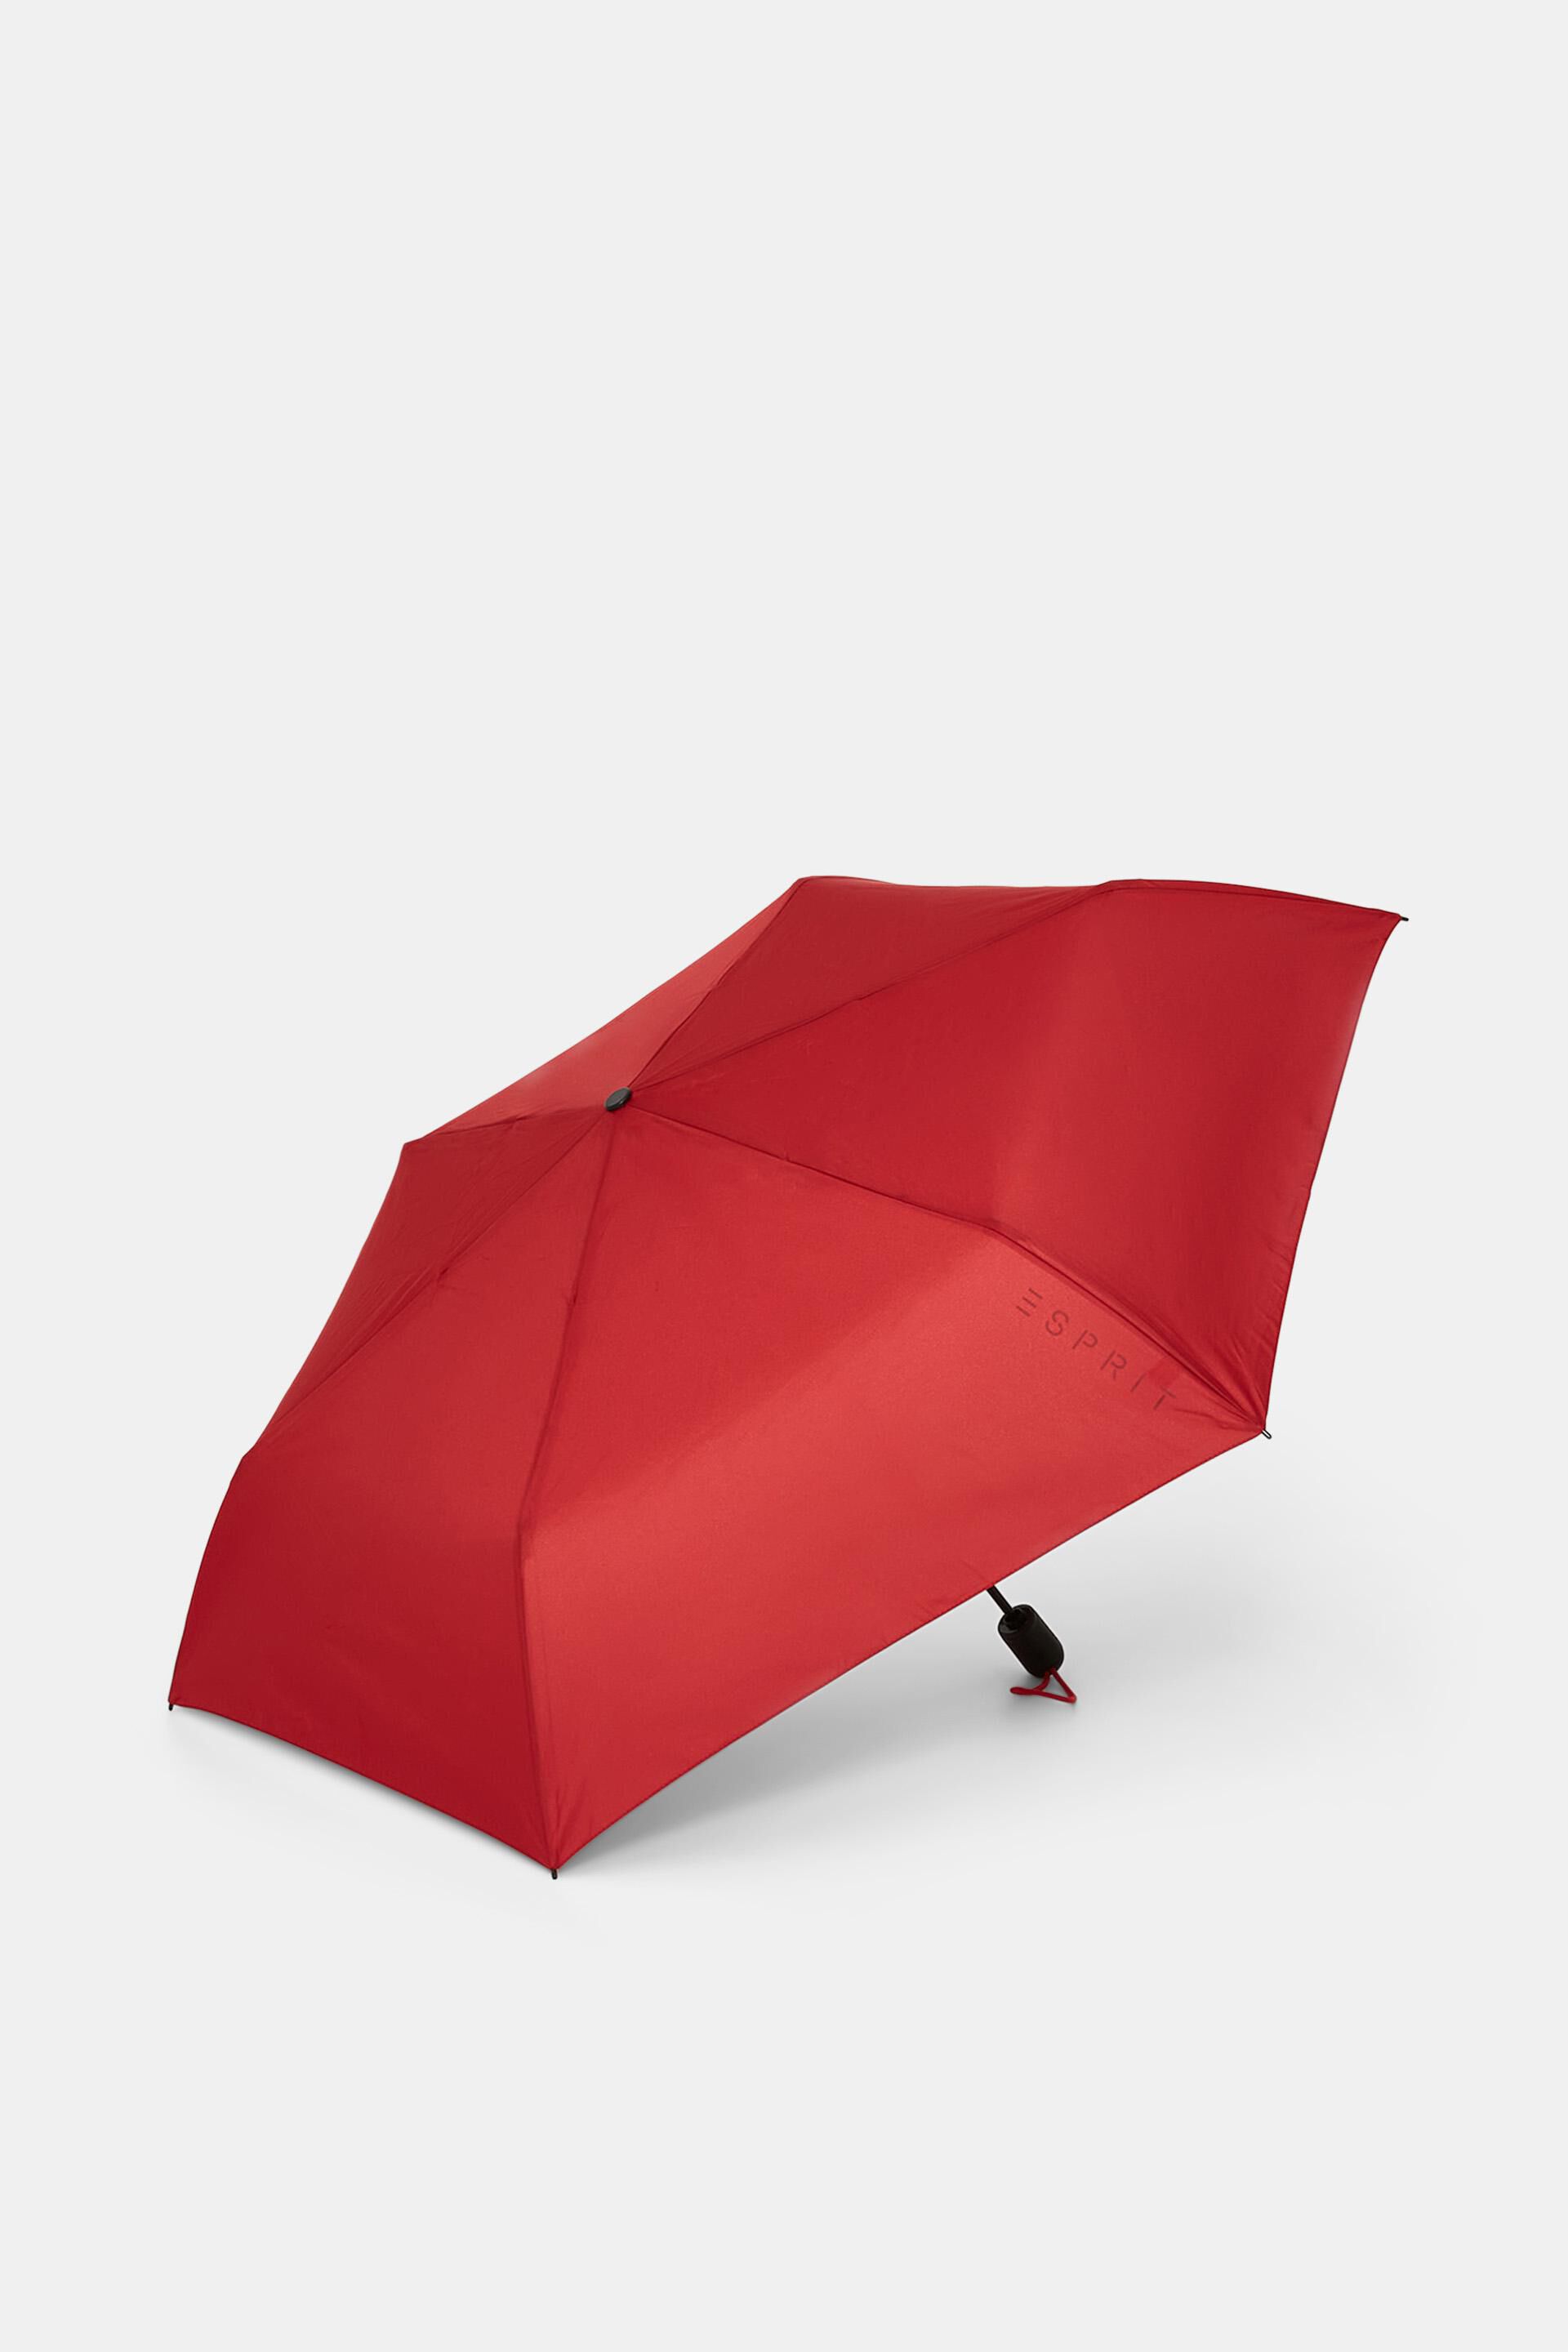 Pocket Umbrella 86 D Cm, Black Combo, 55% OFF